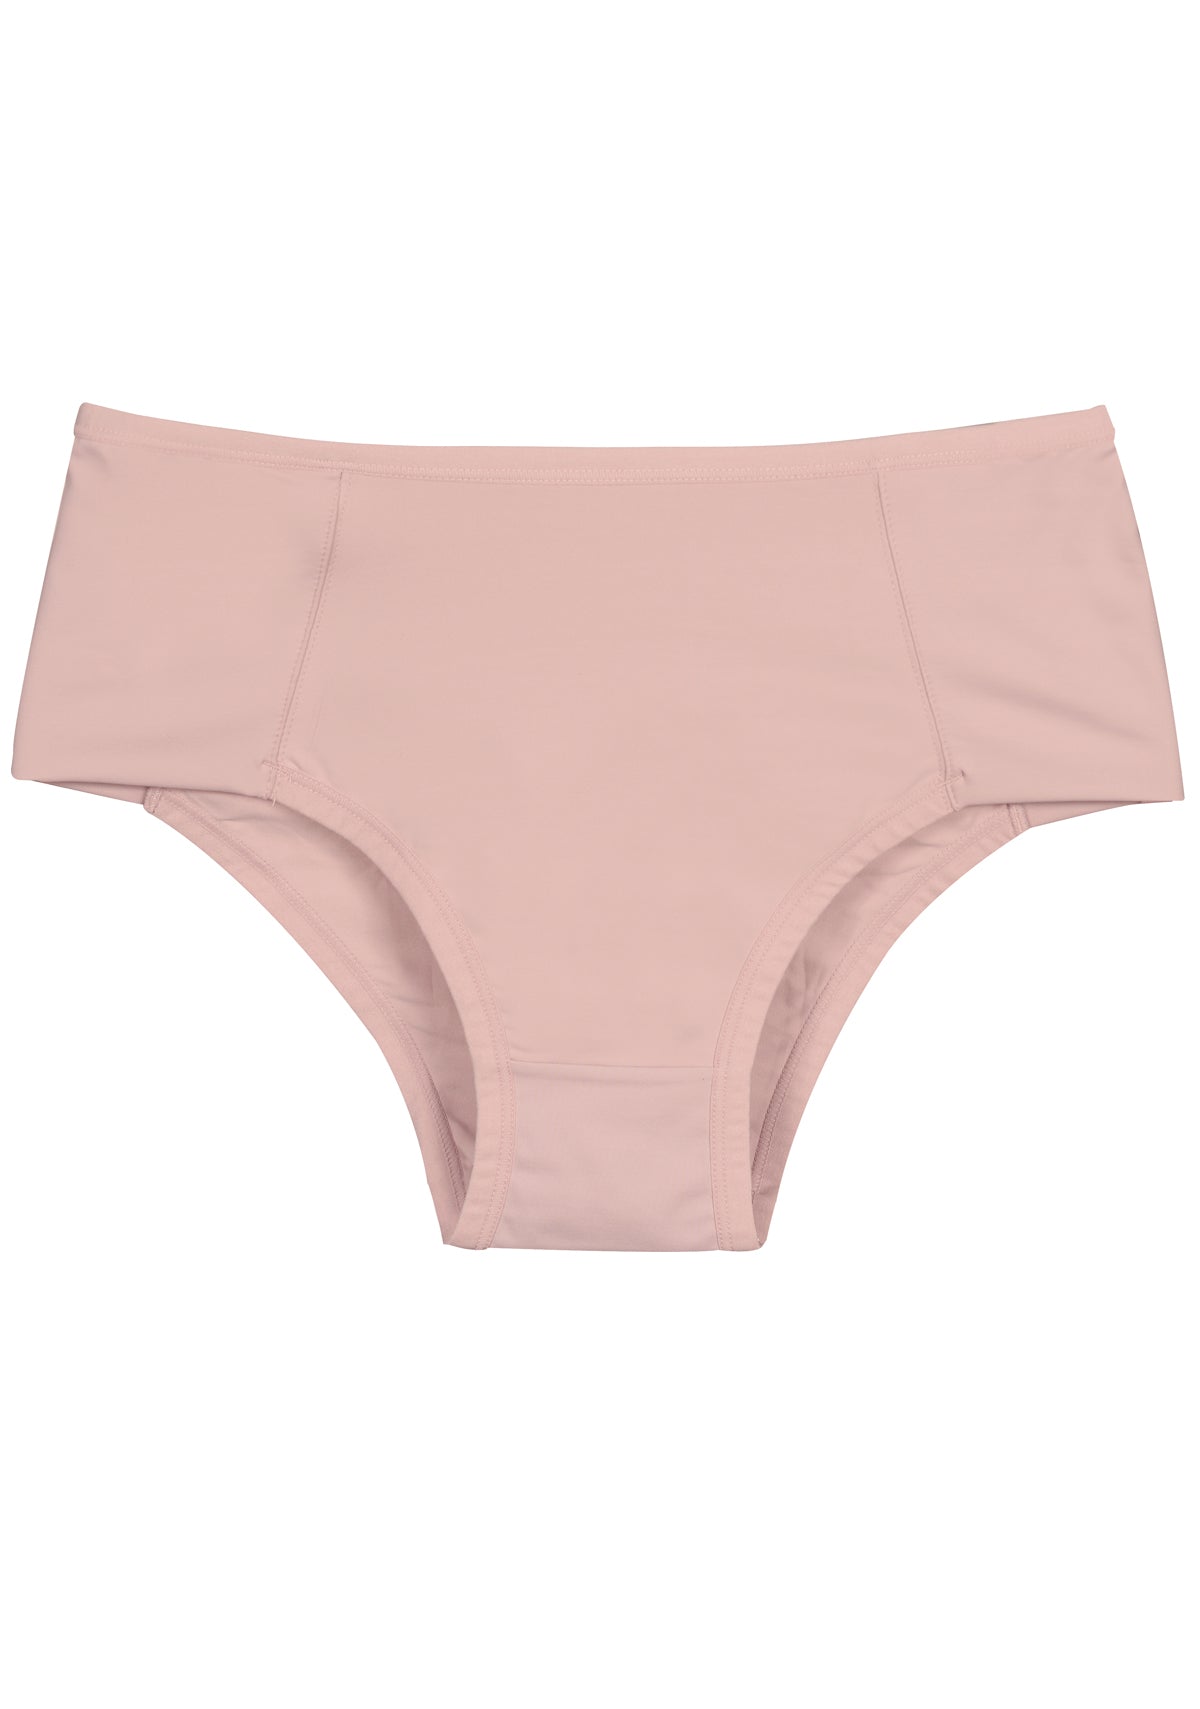 Panty Women Plain Cotton Panties Set, Size: 110cm at Rs 42/piece